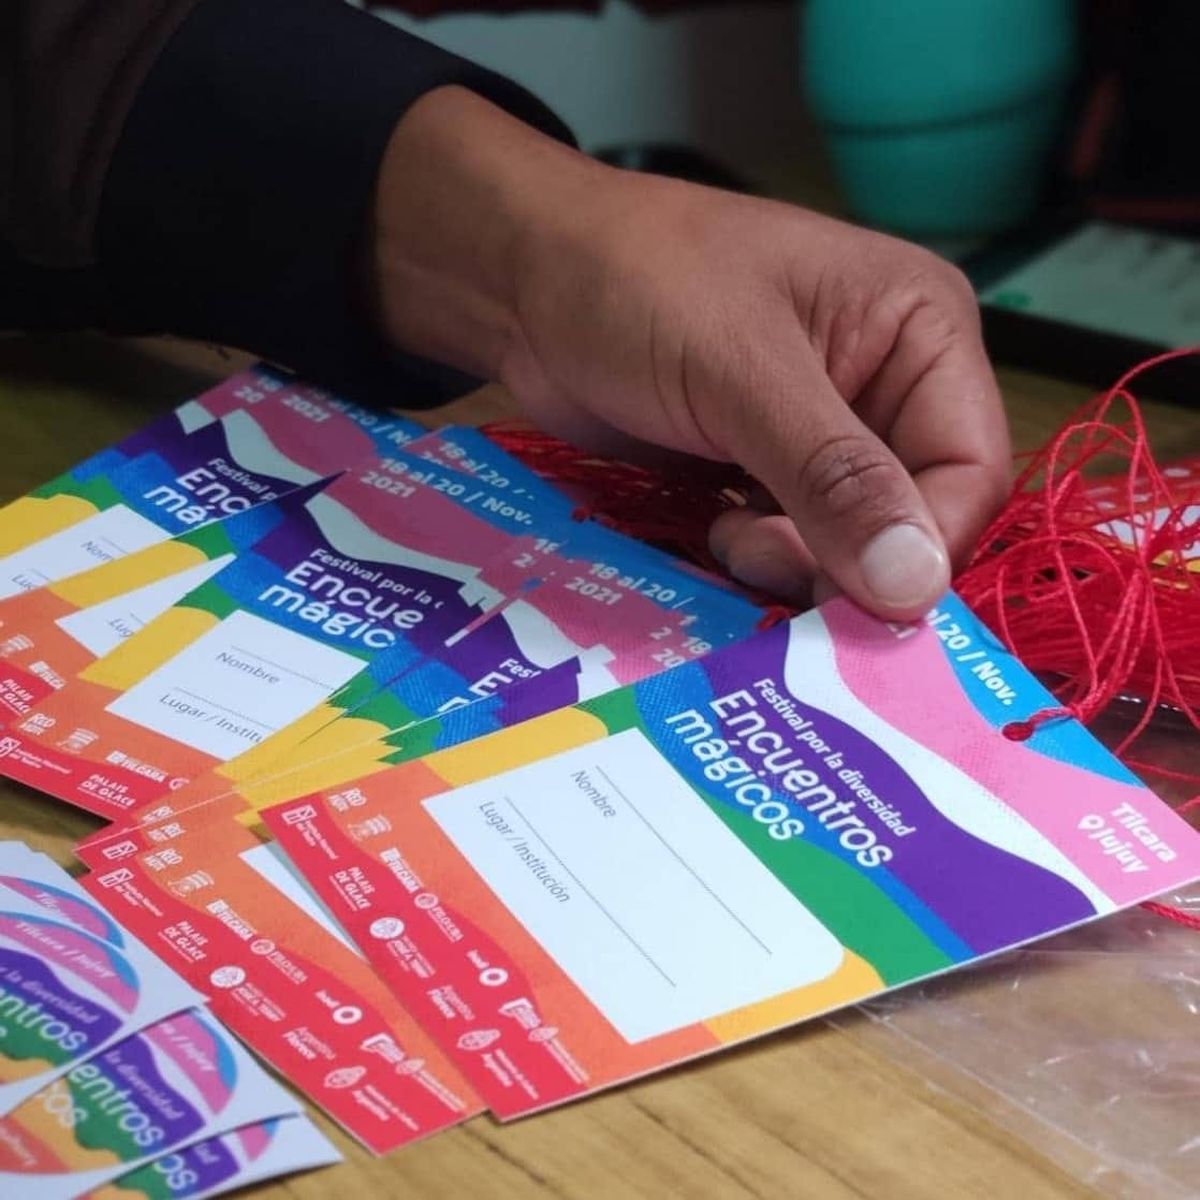 Tilcara fue sede de un festival para promover derechos LGBTIQ+